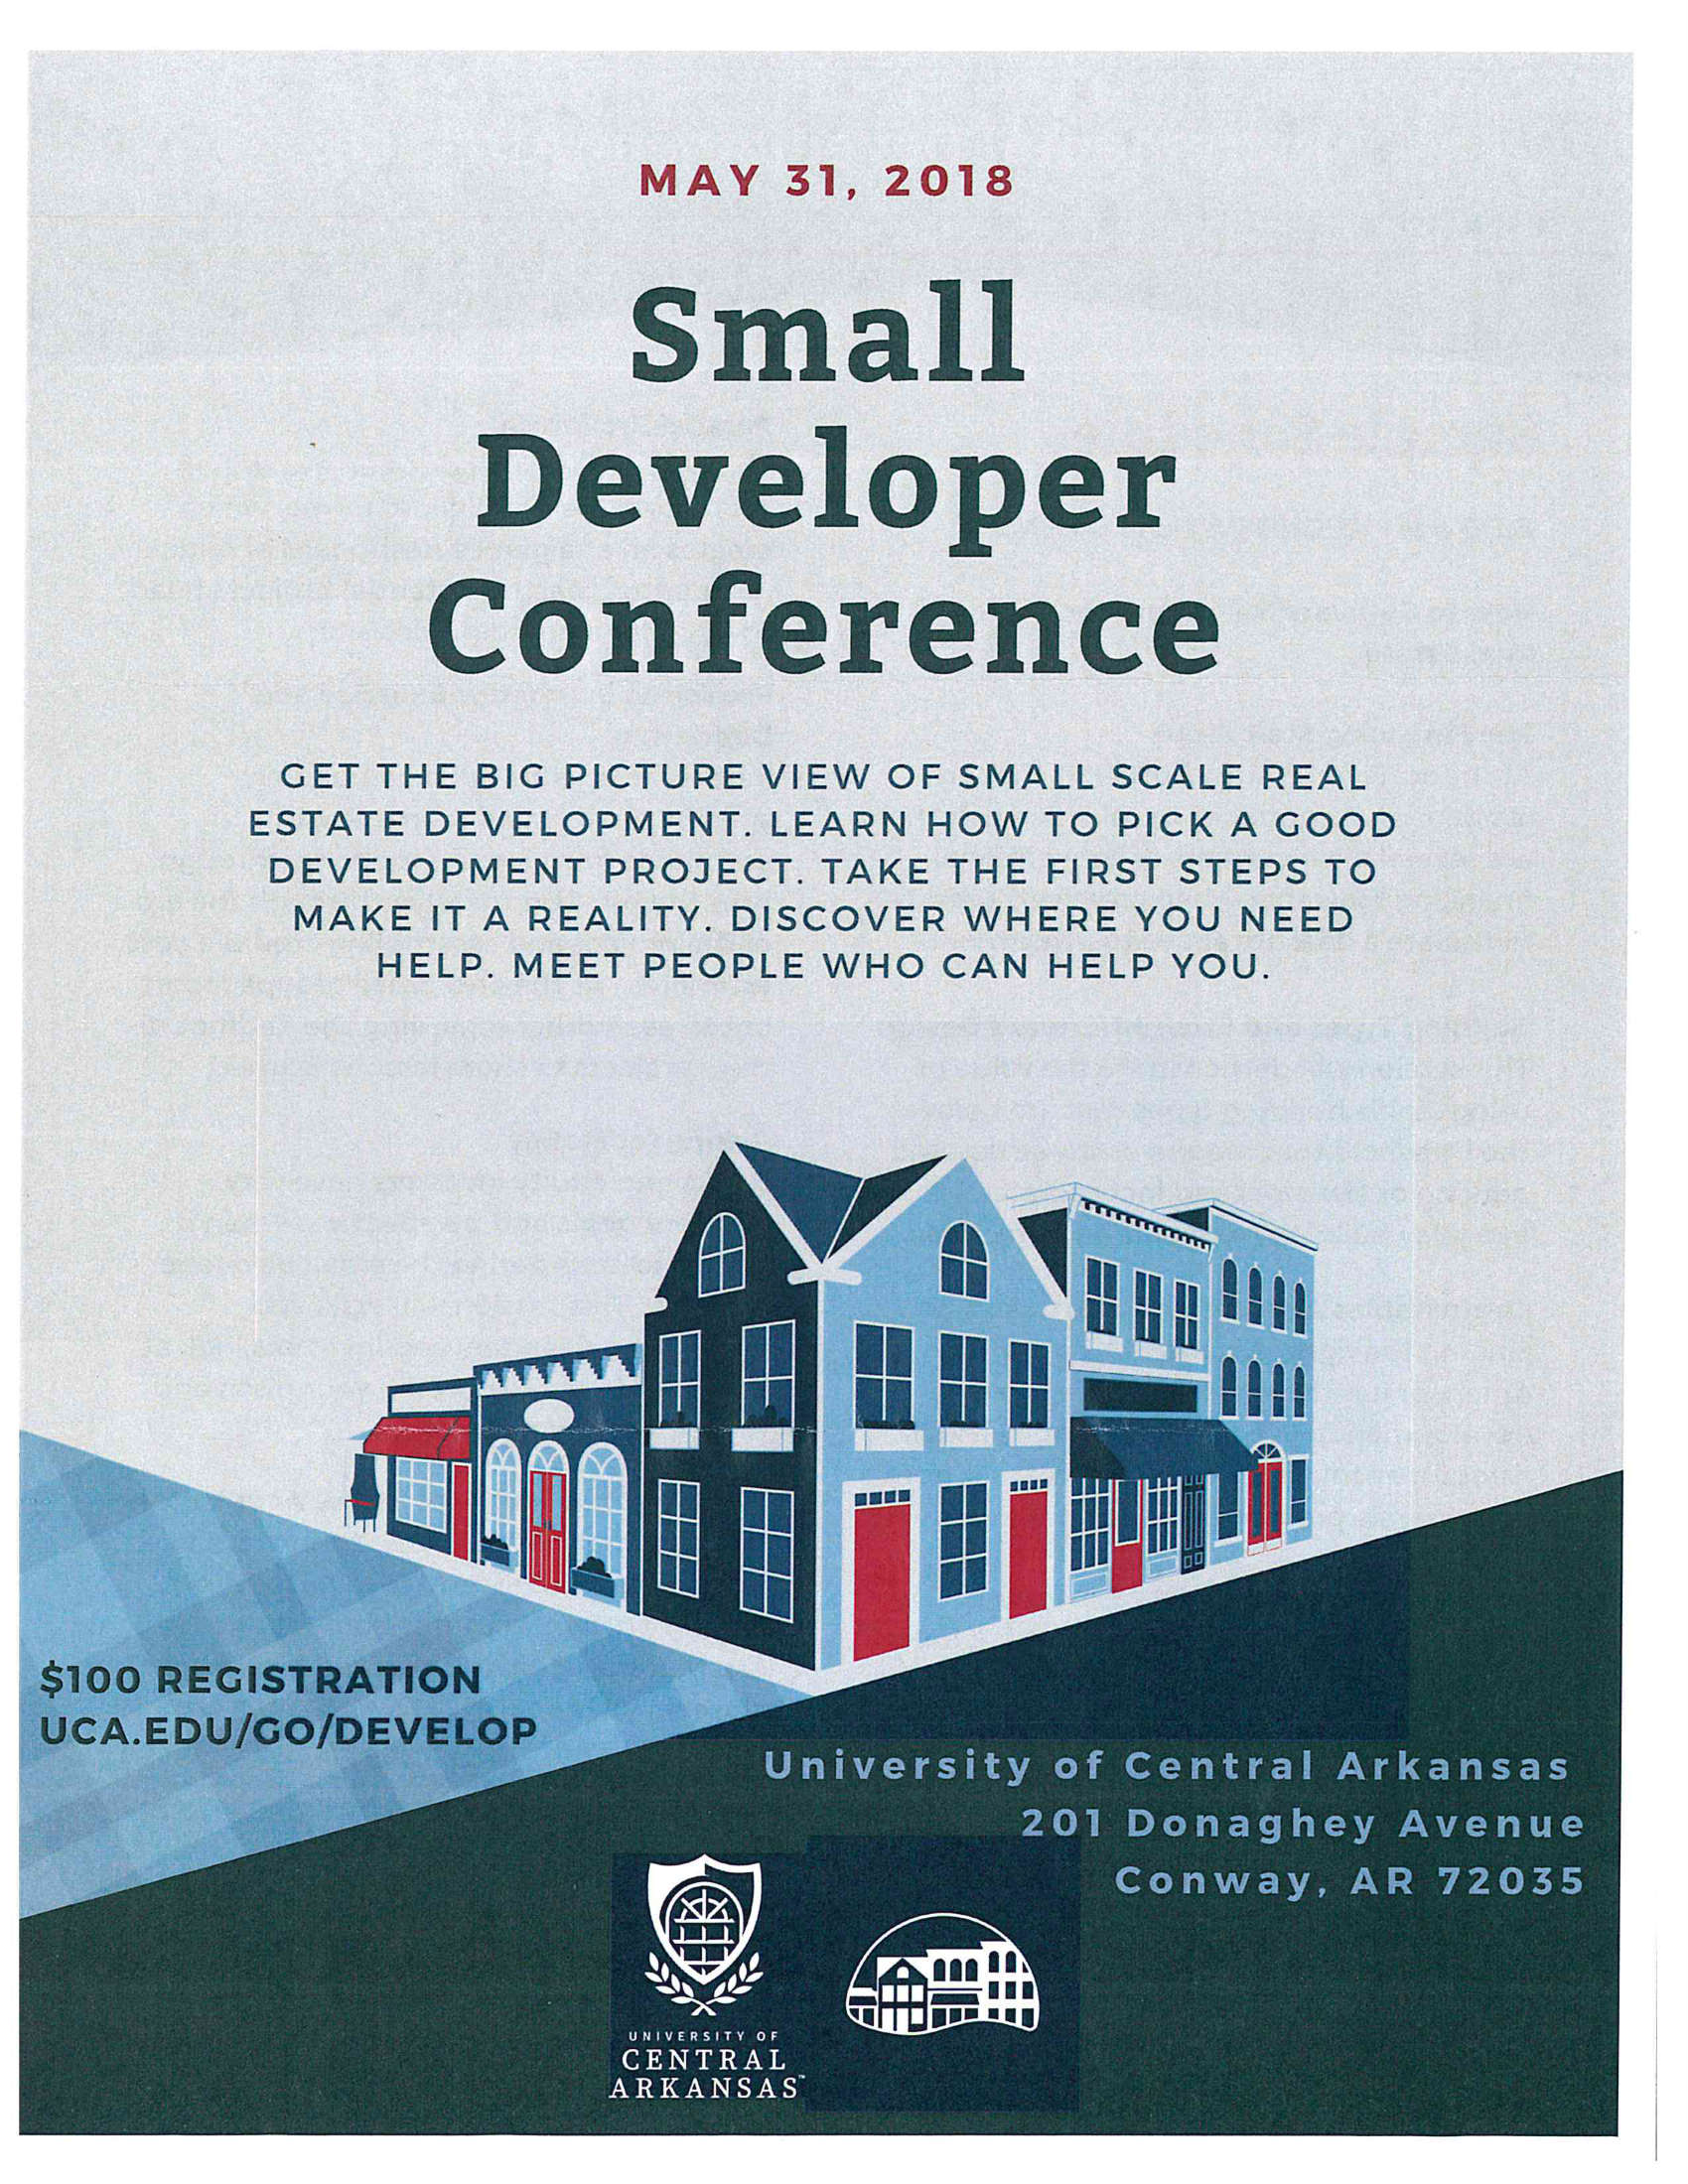 Small Developer Conference